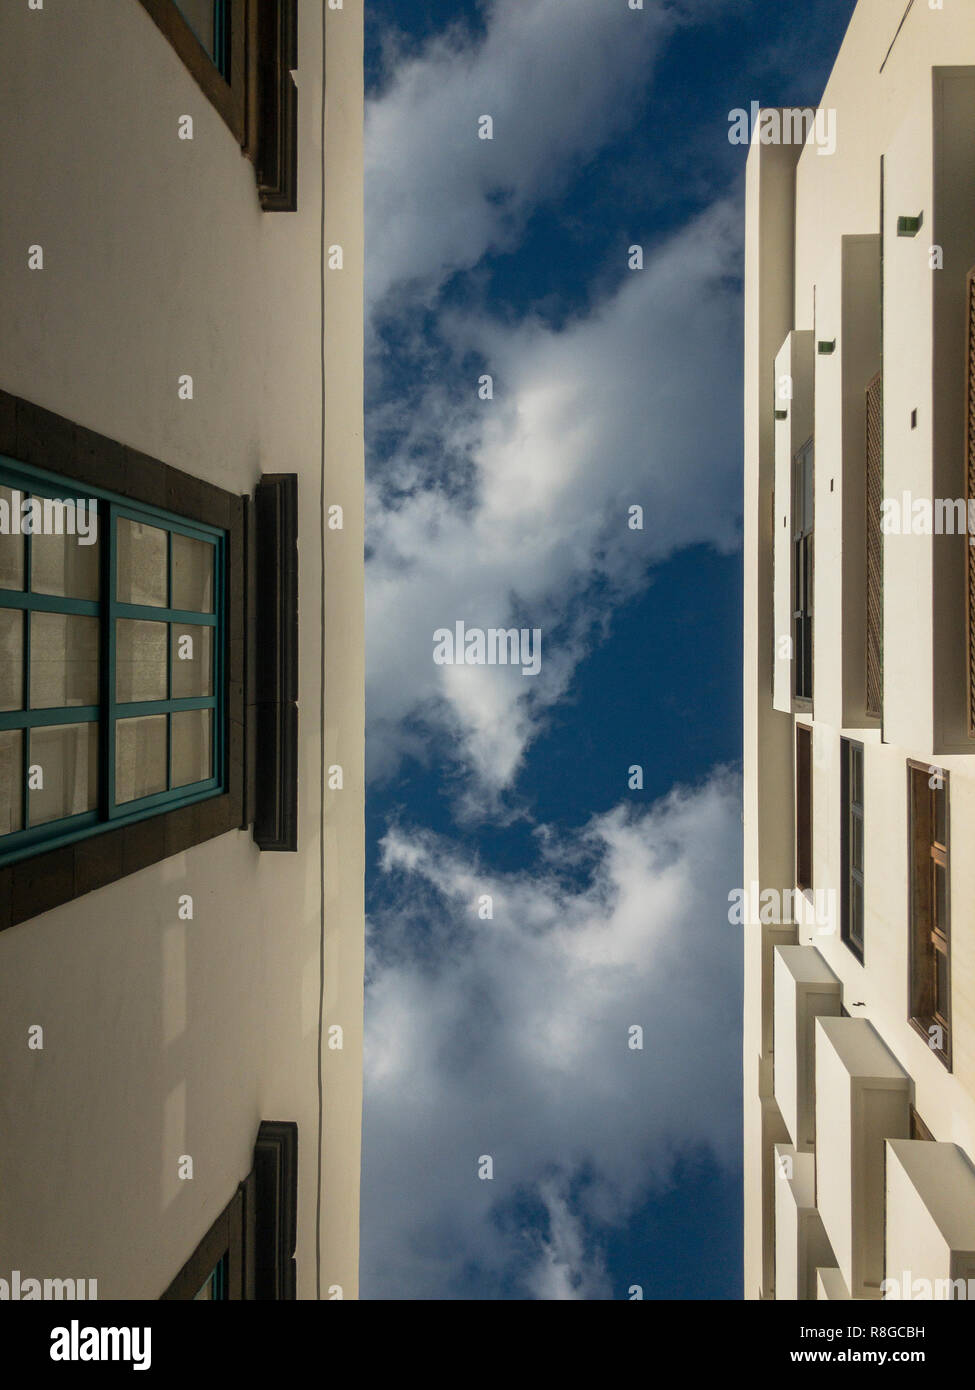 La fenêtre de style colonial, l'architecture typique, Arrecife, Lanzarote, îles Canaries. L'Espagne. Bue Ciel et nuages Banque D'Images